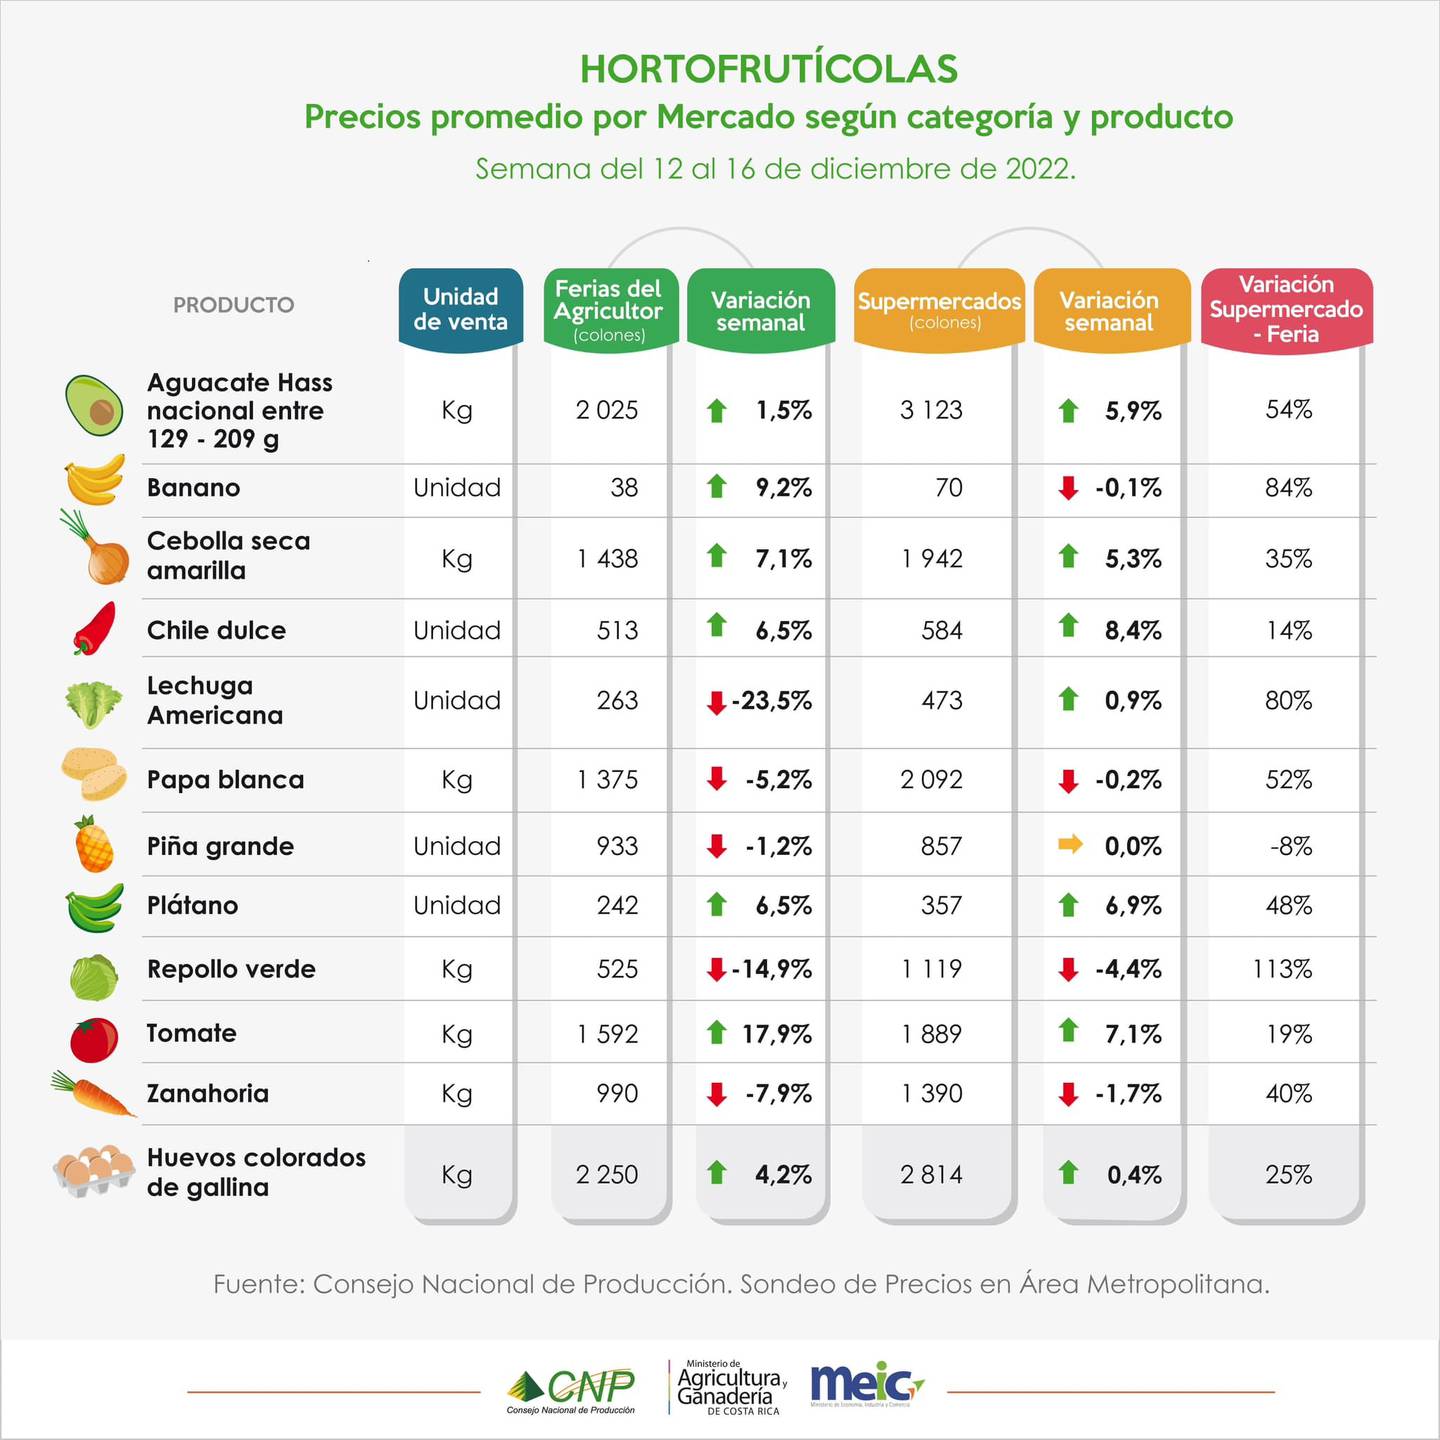 Último comparativo del 2022 de precios que hace el CNP entre las ferias del agricultor y las carnicerías contra los supermercados.